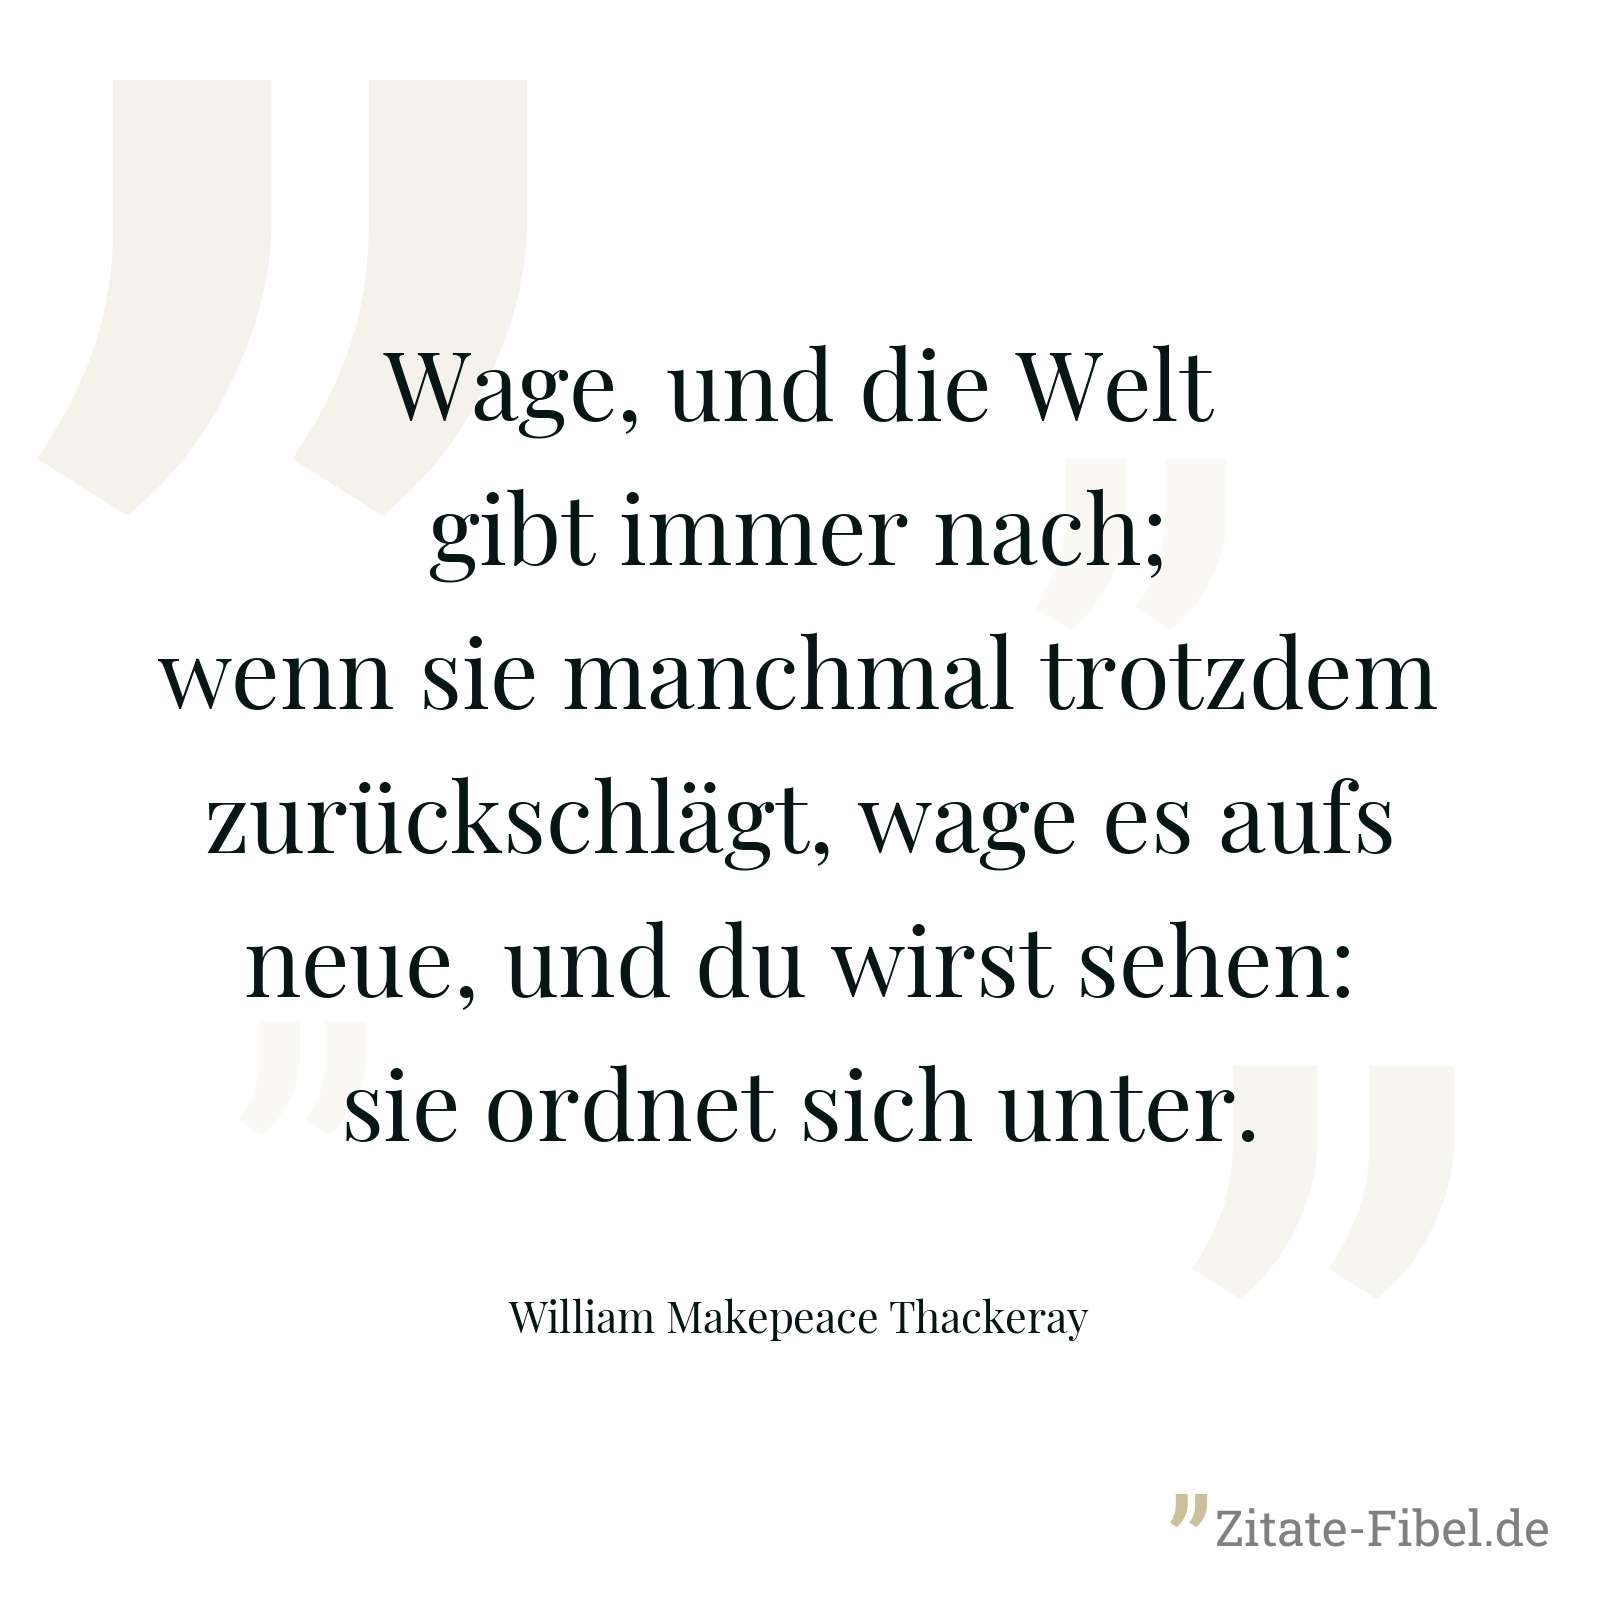 Wage, und die Welt gibt immer nach; wenn sie manchmal trotzdem zurückschlägt, wage es aufs neue, und du wirst sehen: sie ordnet sich unter. - William Makepeace Thackeray